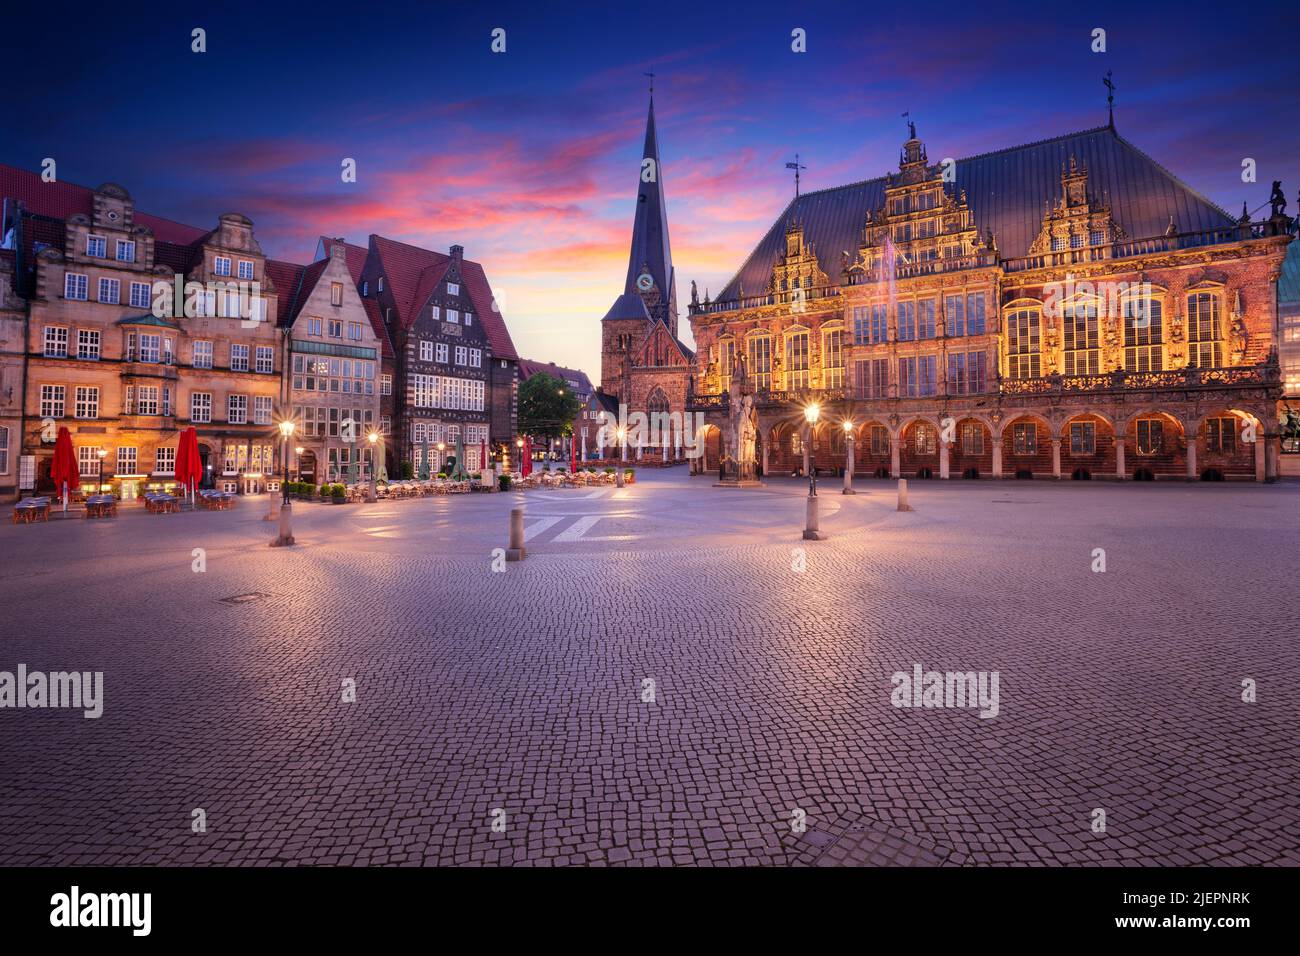 Brême, Allemagne. Image de paysage urbain de la ville hanséatique de Brême, Allemagne avec place du marché historique et hôtel de ville au lever du soleil d'été. Banque D'Images